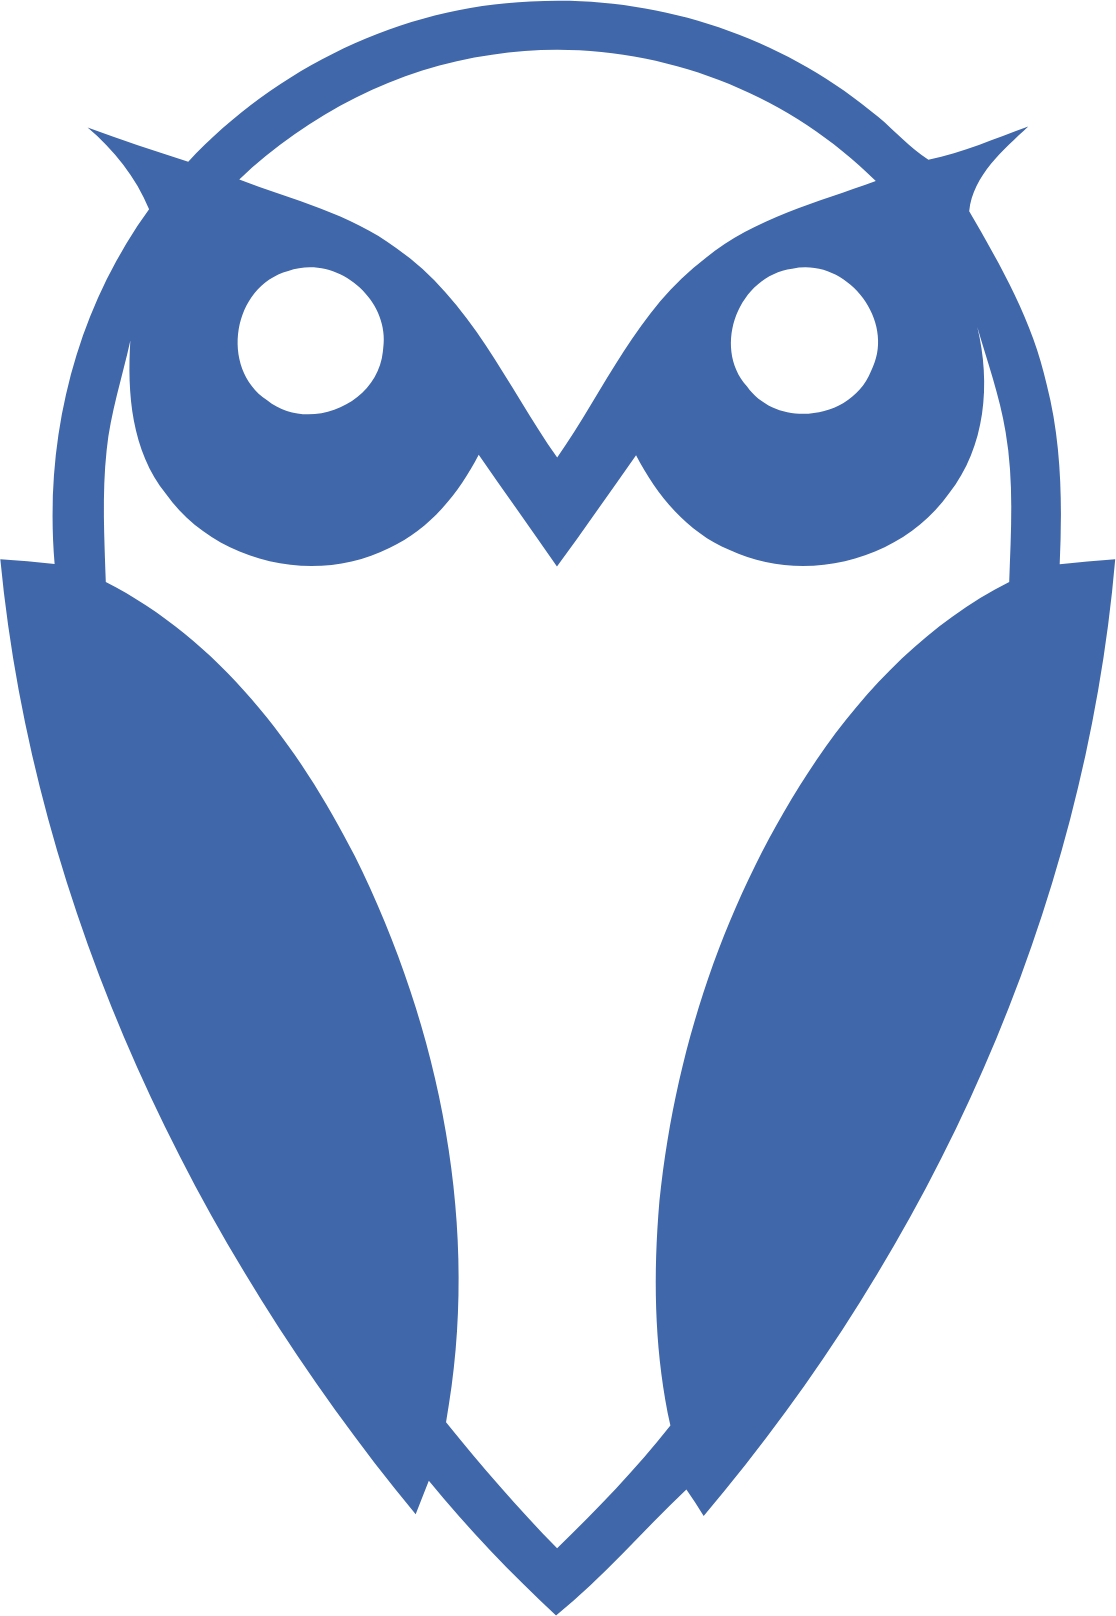 FinWise Bancorp logo (PNG transparent)